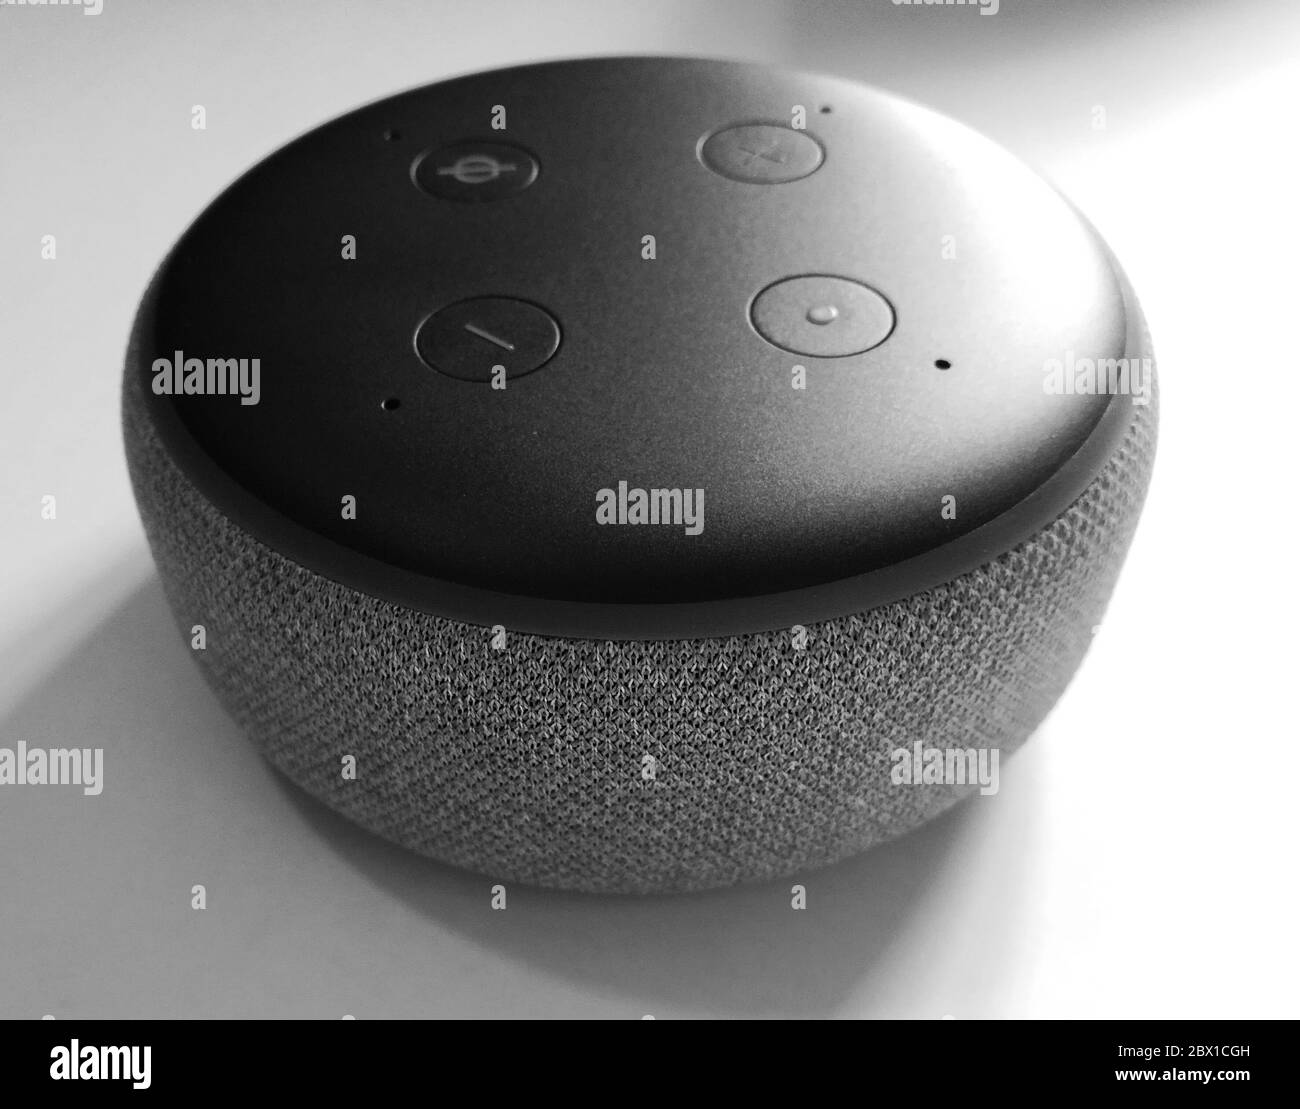 New york / USA - Fév 5 2020: Amazon Echo Dot Black 3rd gen - reconnaissance  vocale, isolé sur fond blanc - Haut-parleur intelligent avec assistant Alexa  Photo Stock - Alamy